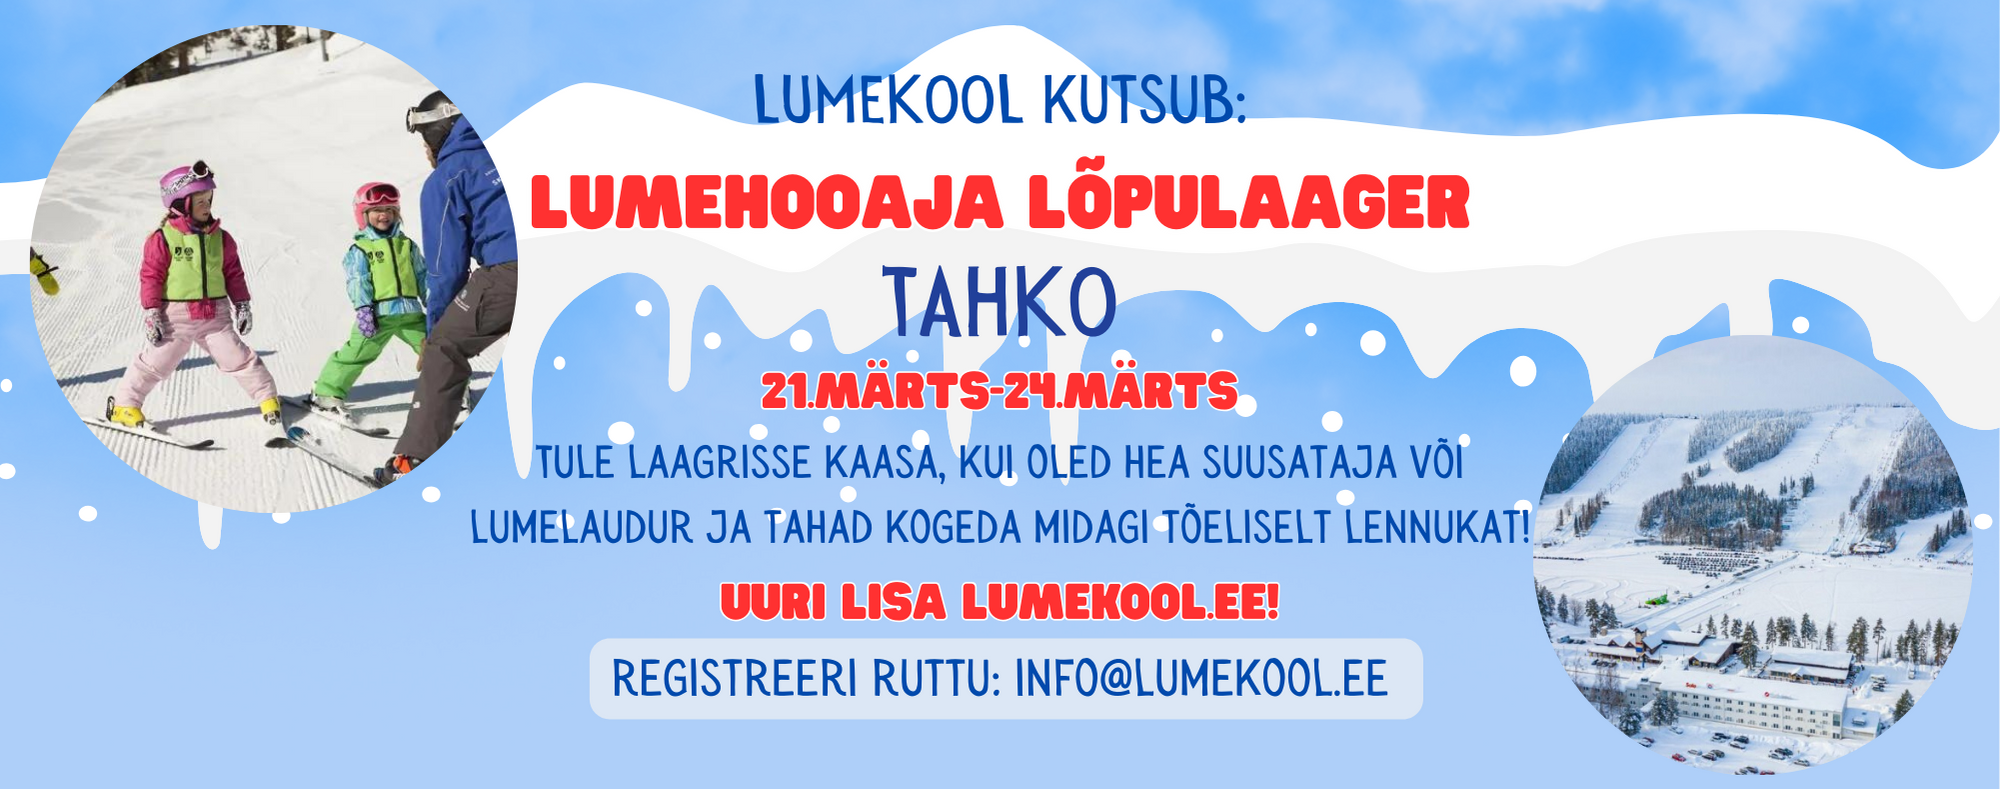 Hea lumesõber! Oled oodatud Lumekooliga kaasa lumehooaja lõpu laagrisse. 21-24. MÄRTS 2024 LUMEHOOAJA LÕPULAAGER – TAHKO MÄEKESKUSES (Soome) Lumekooli talvehooa